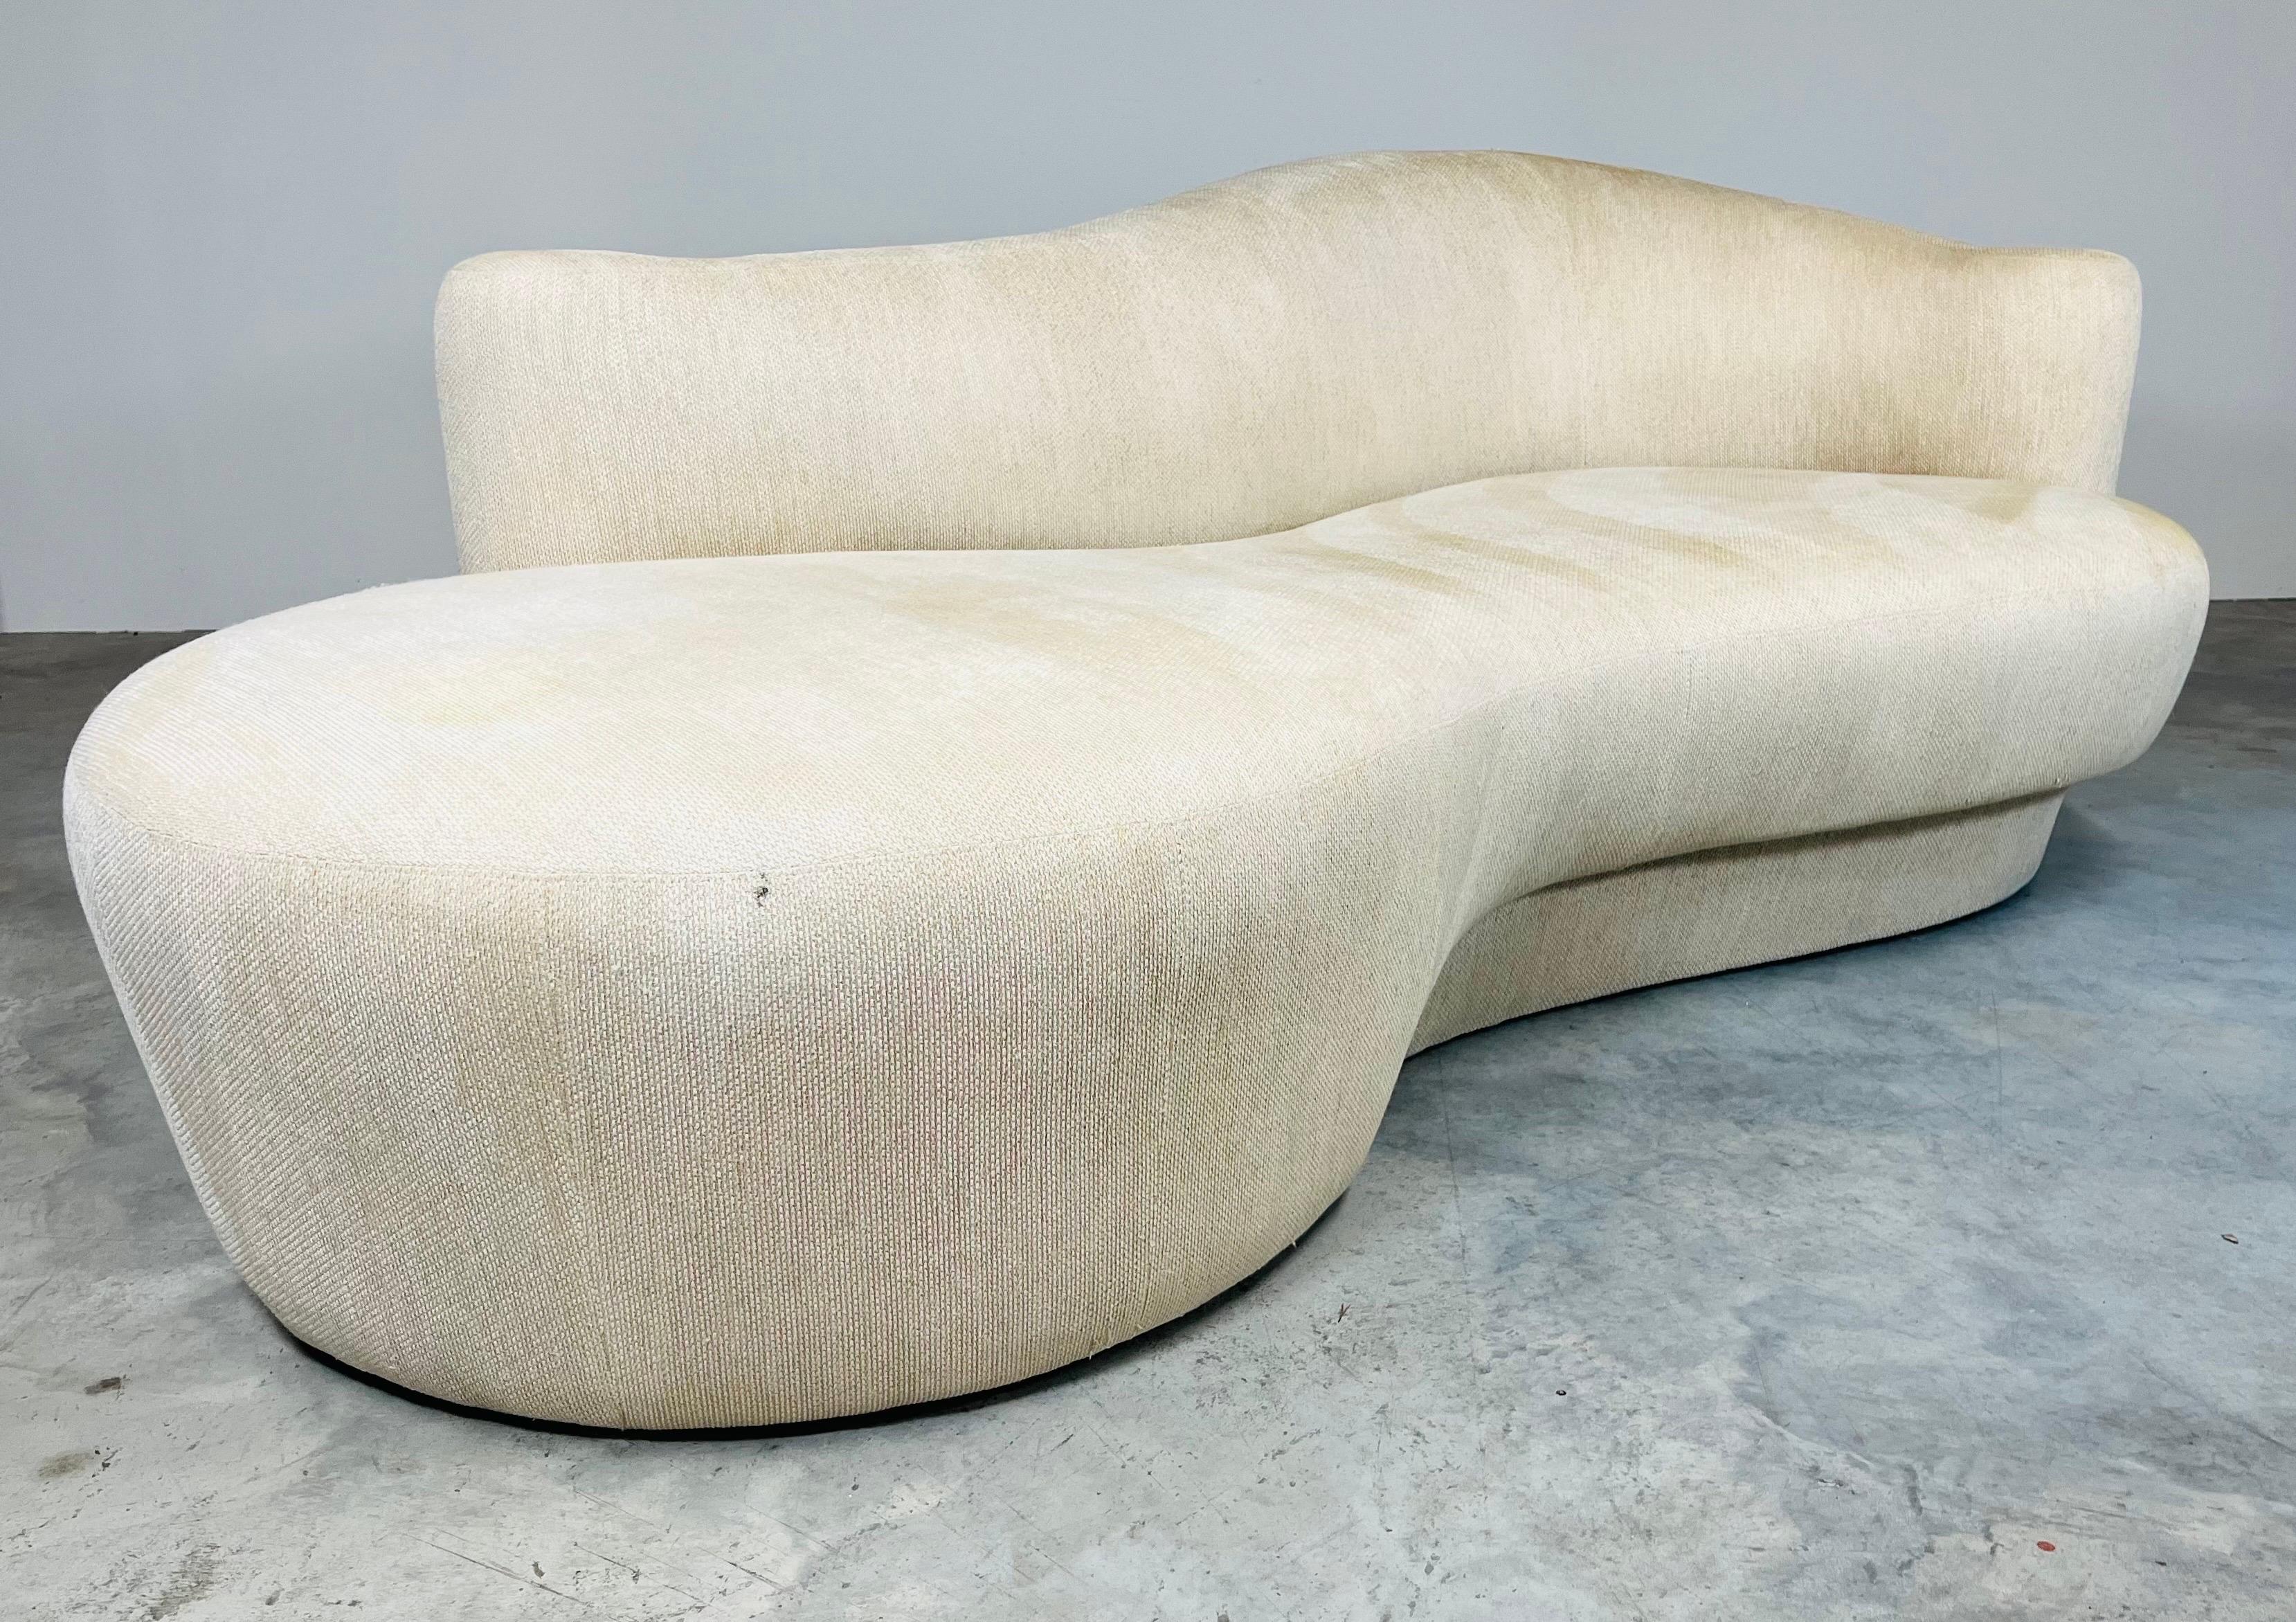 Sculptural Cloud Sofa Chaise von Weiman mit glamourösen geschwungenen skulpturalen Linien mit unglaublich komfortablen Design-Struktur. Hergestellt von Weiman um 1990. 
In sehr gutem Zustand, abgesehen von einigen Flecken im Bereich der Füße, die